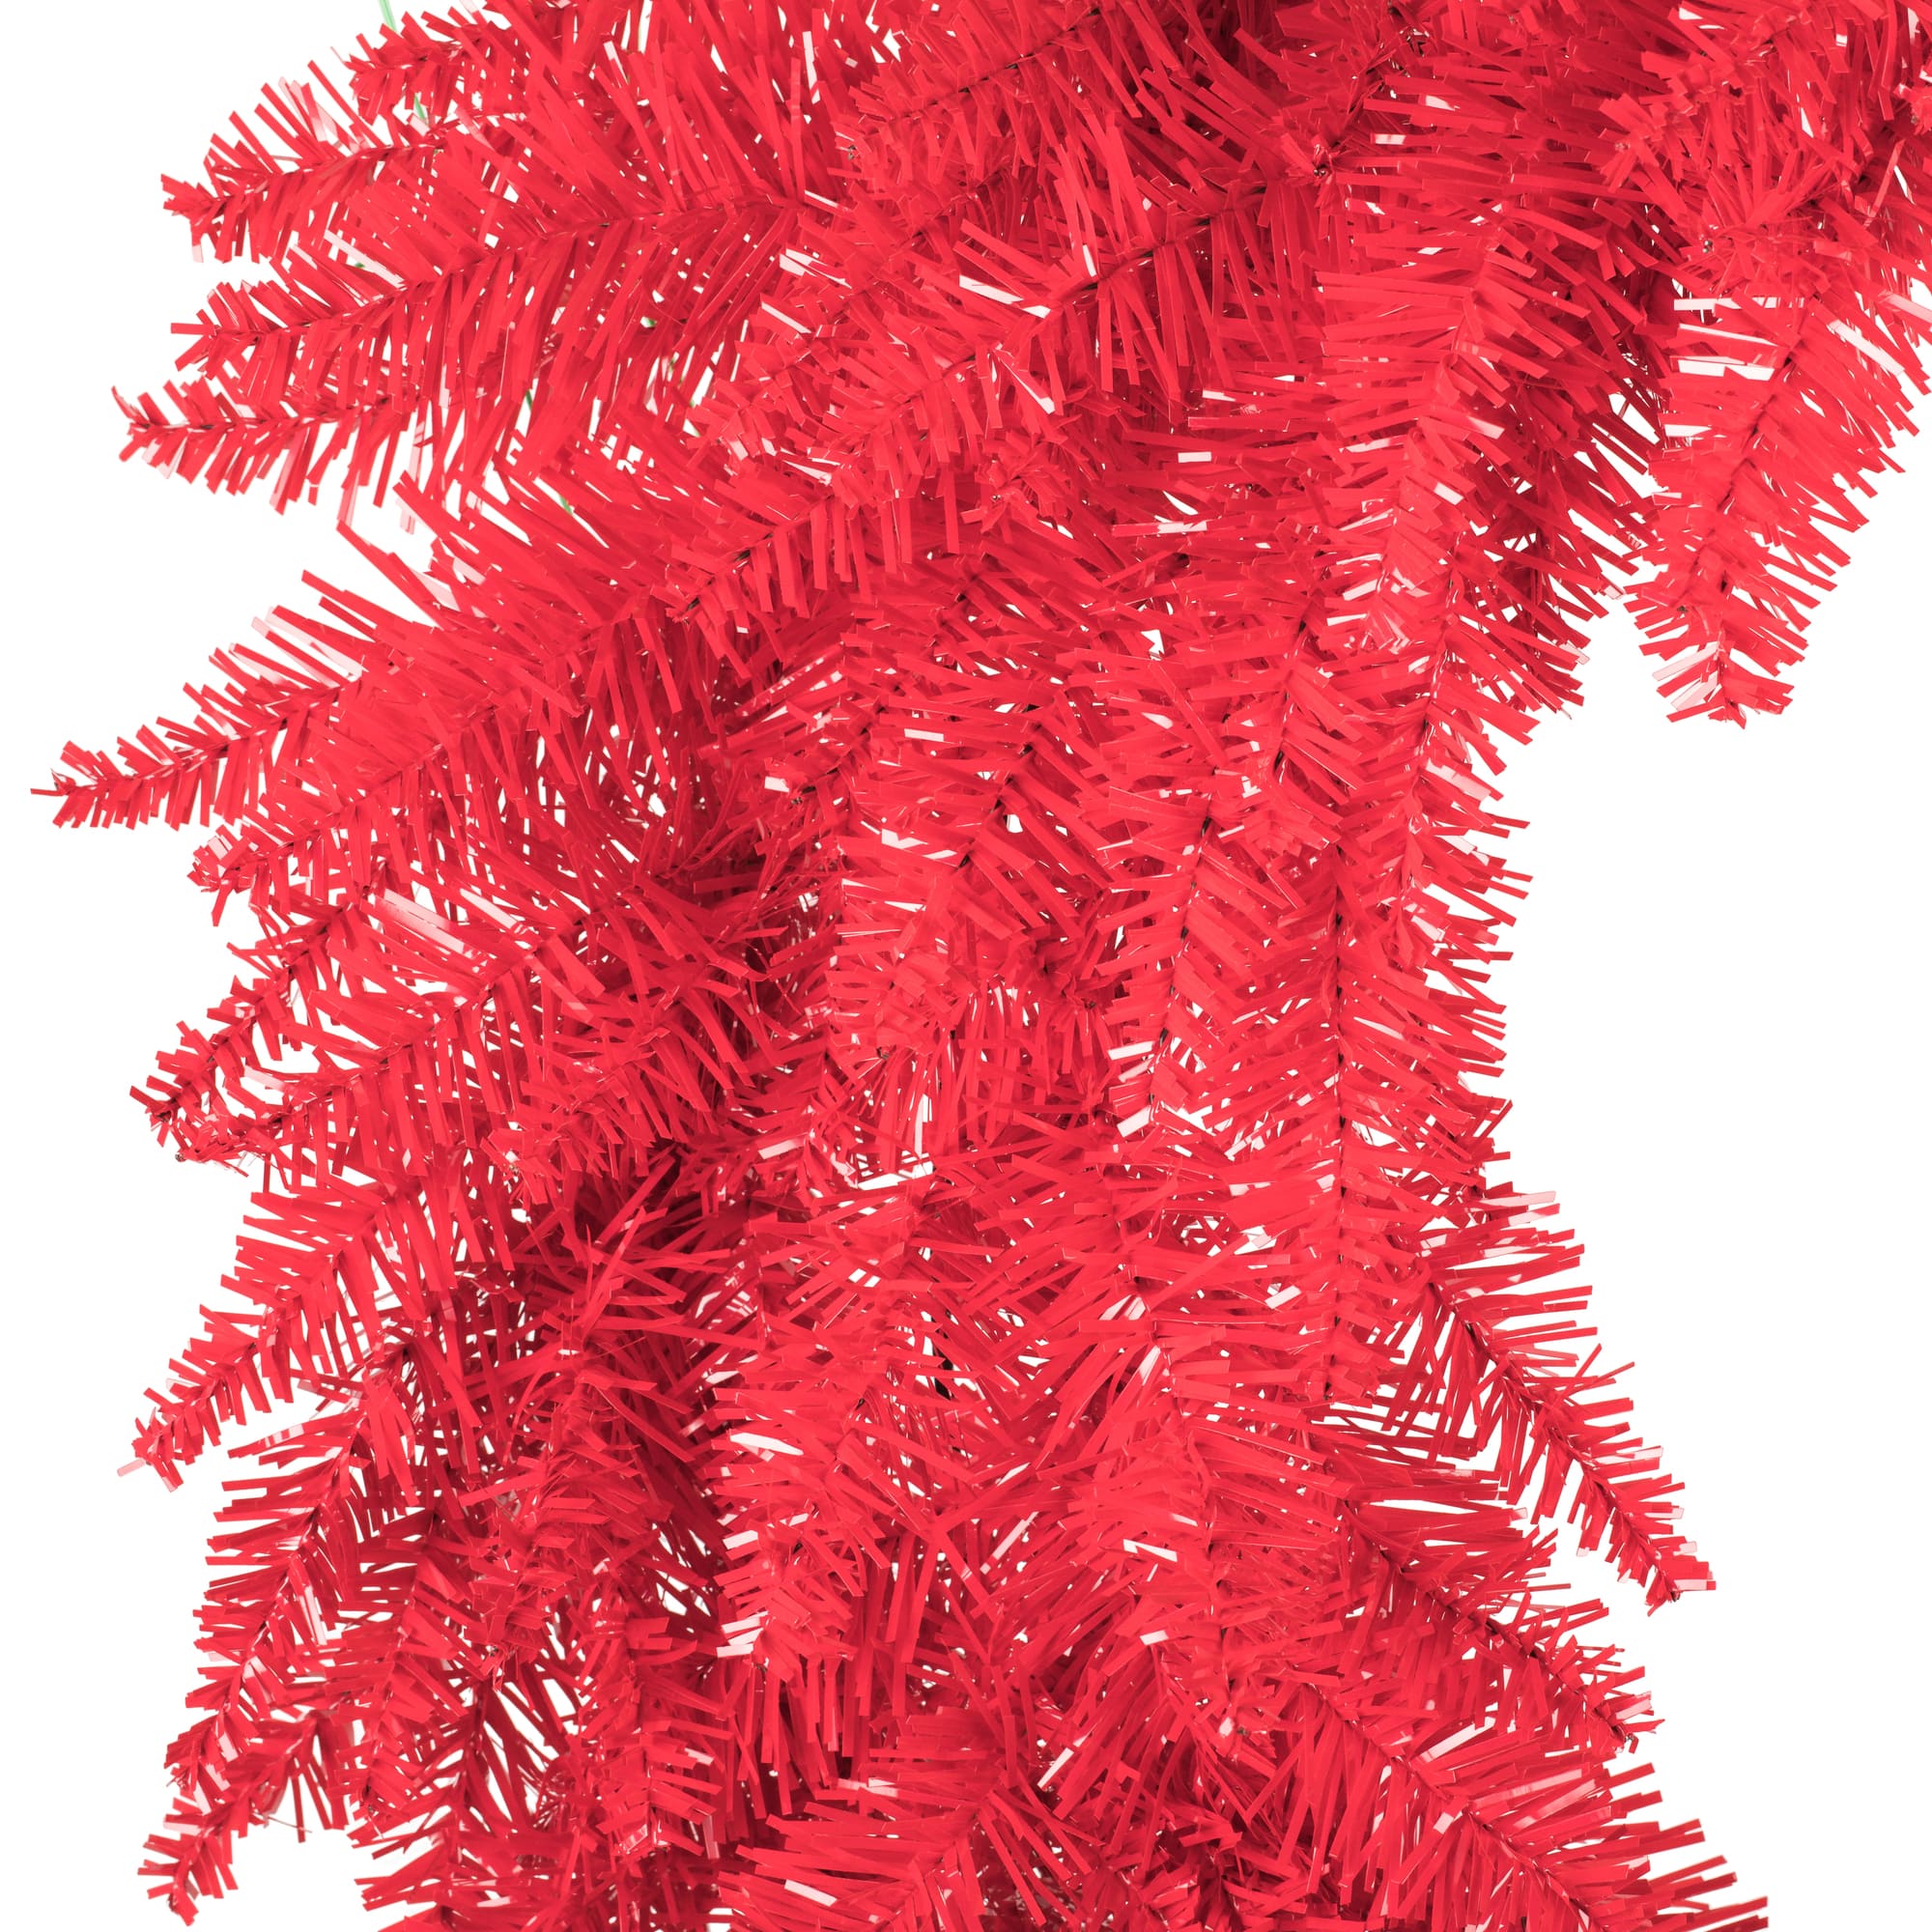 36&#x22; Red Fir Christmas Wreath